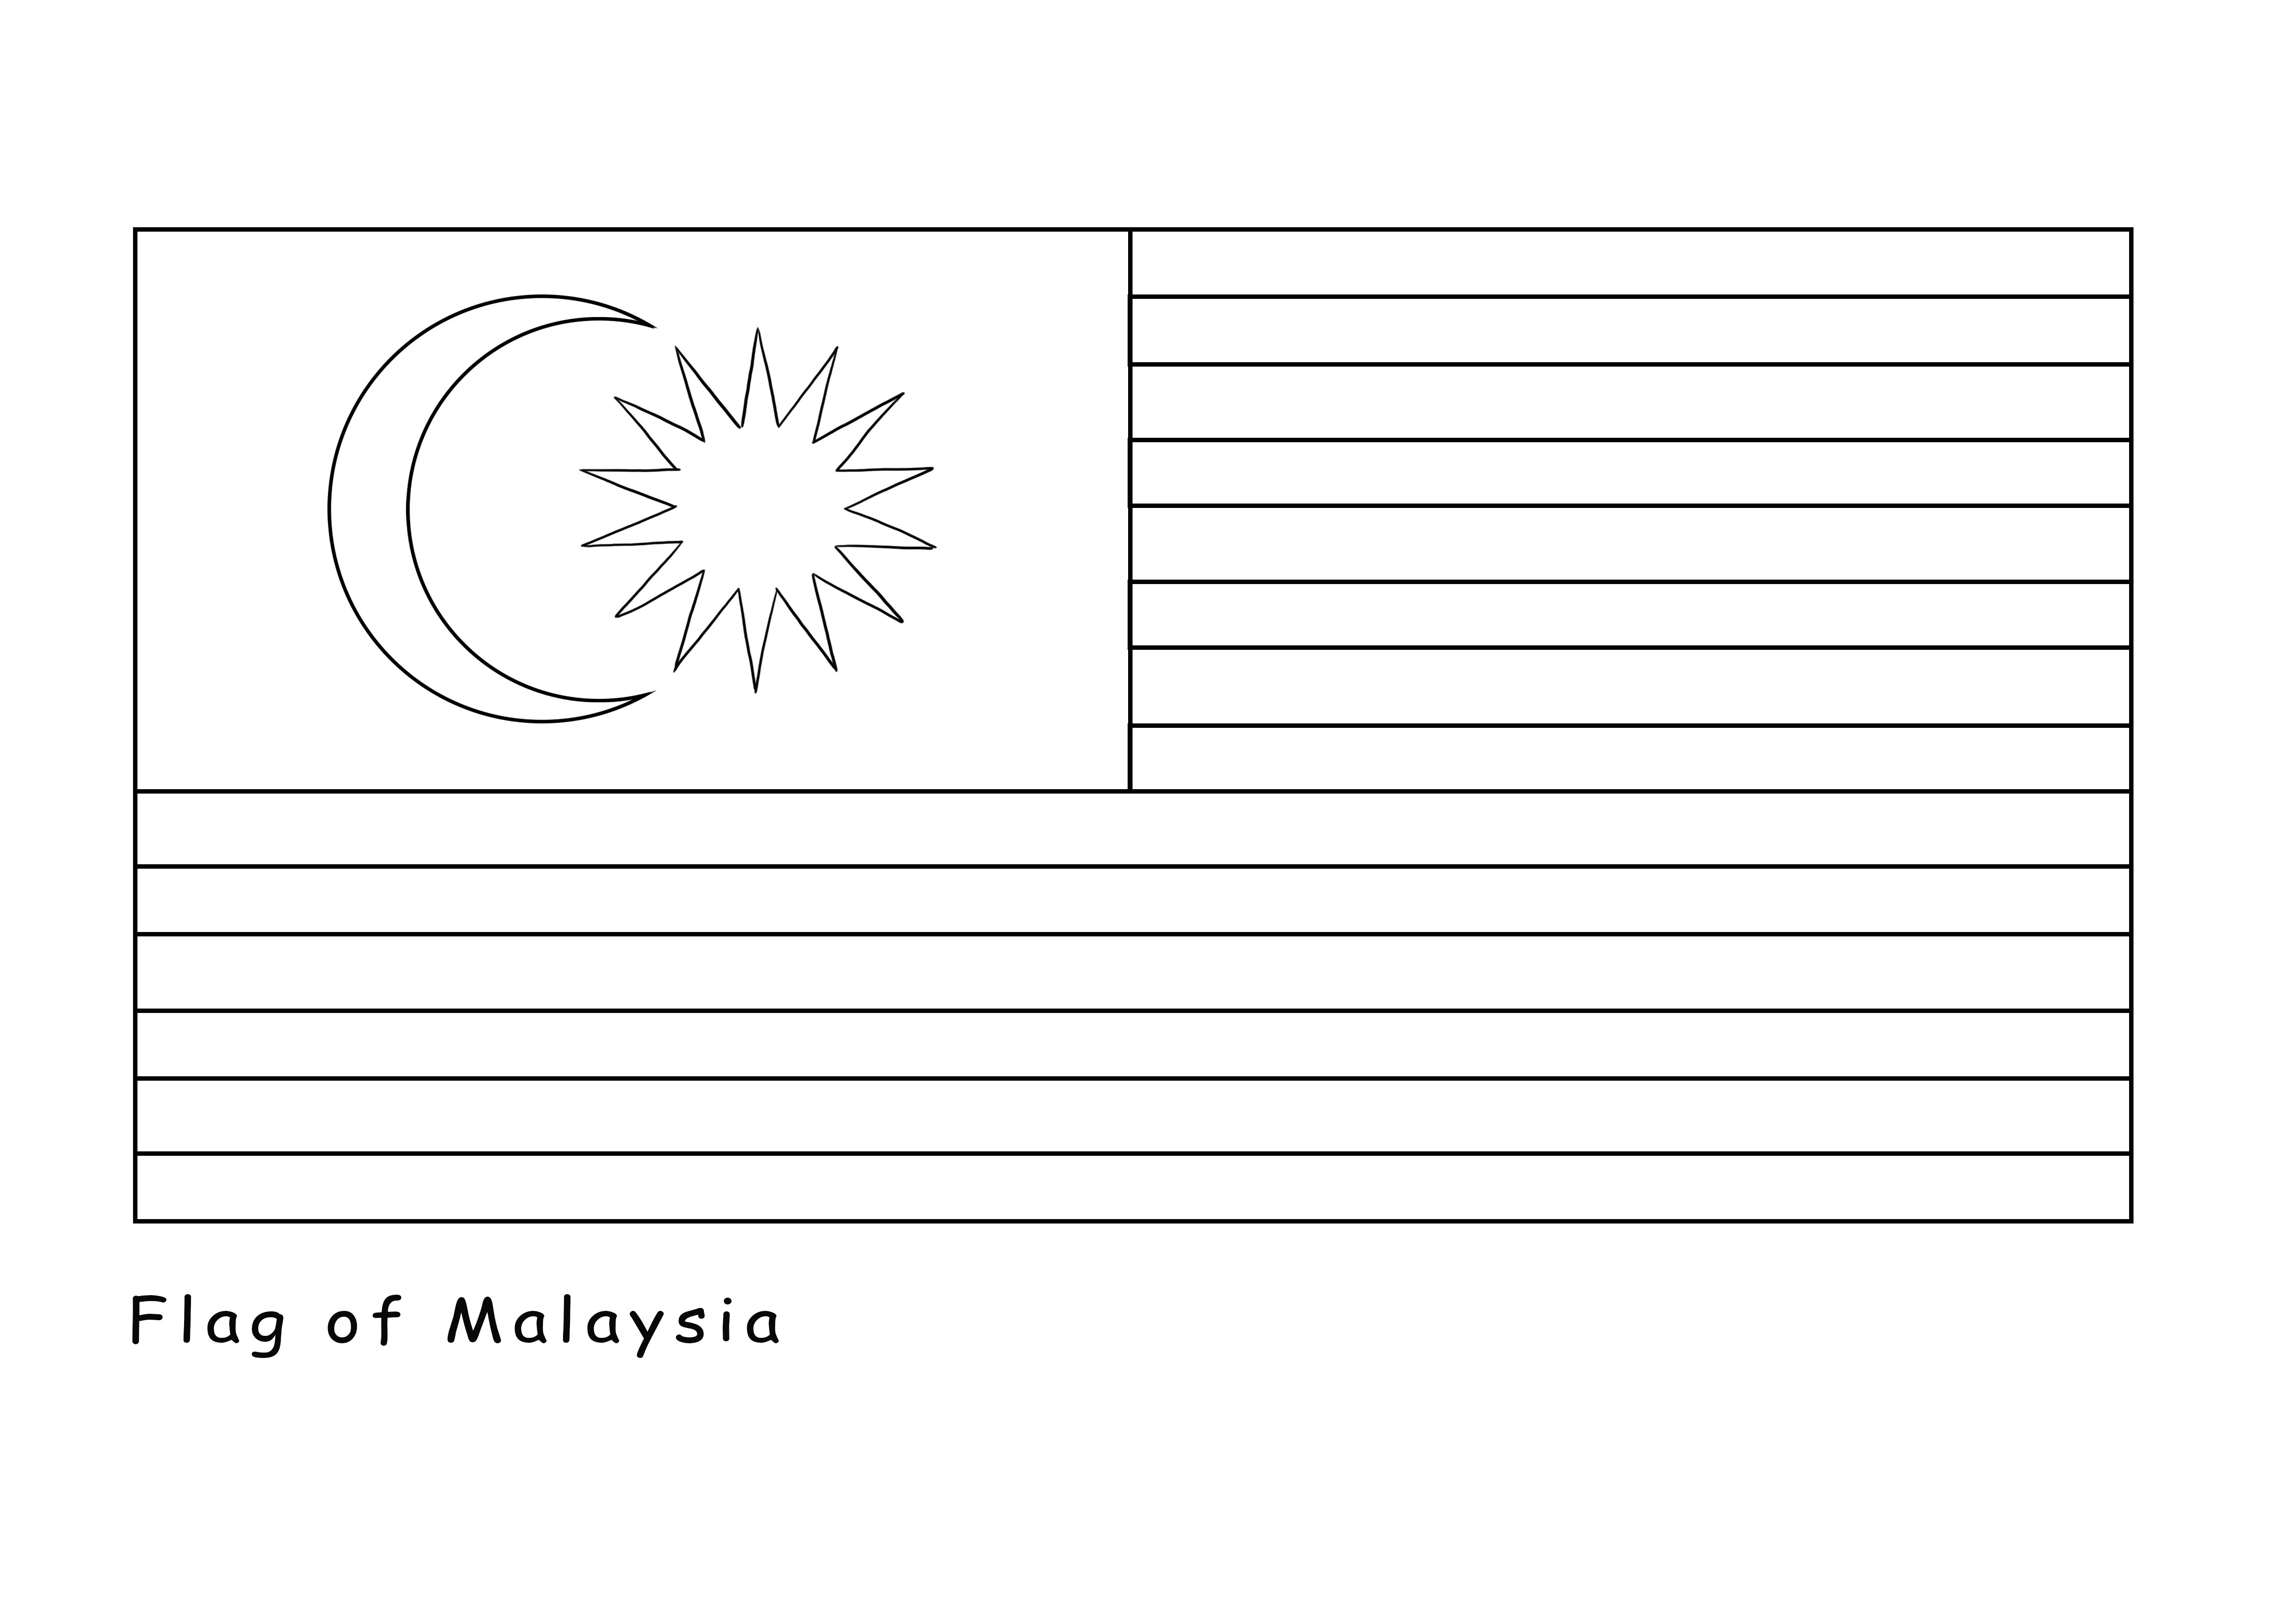 Malesian lippu on tulostettava ilmaiseksi, ja se voidaan värittää ilmaiseksi